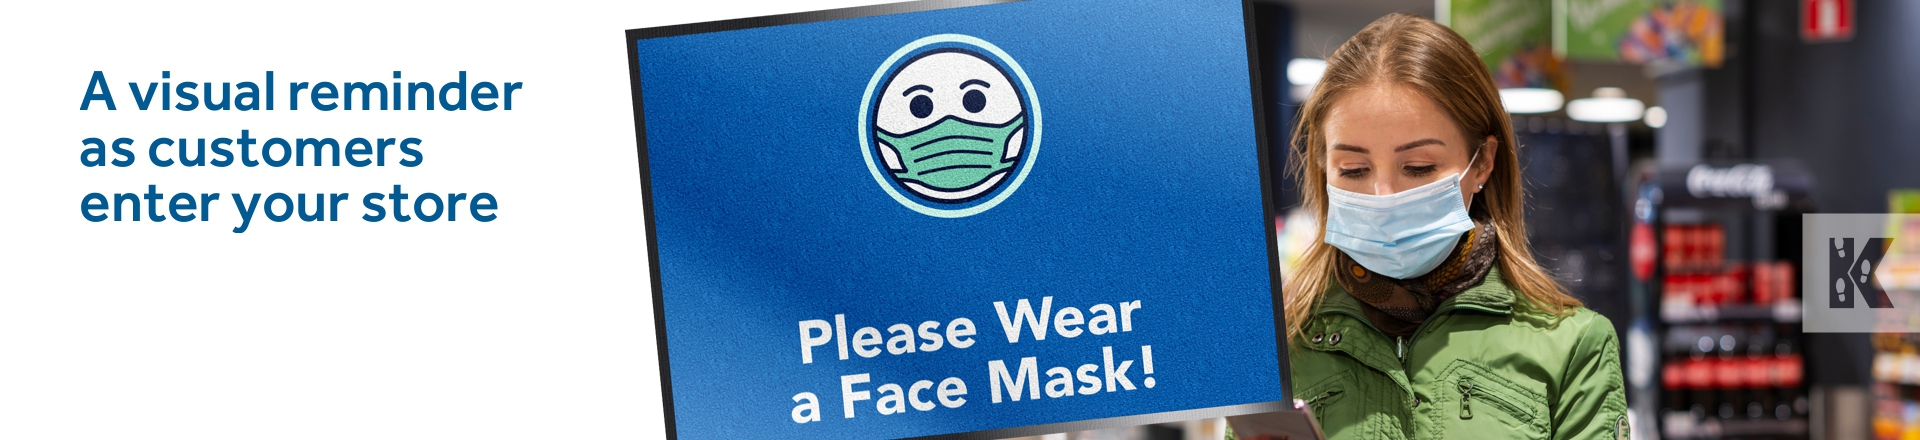 Please wear a Face Mask